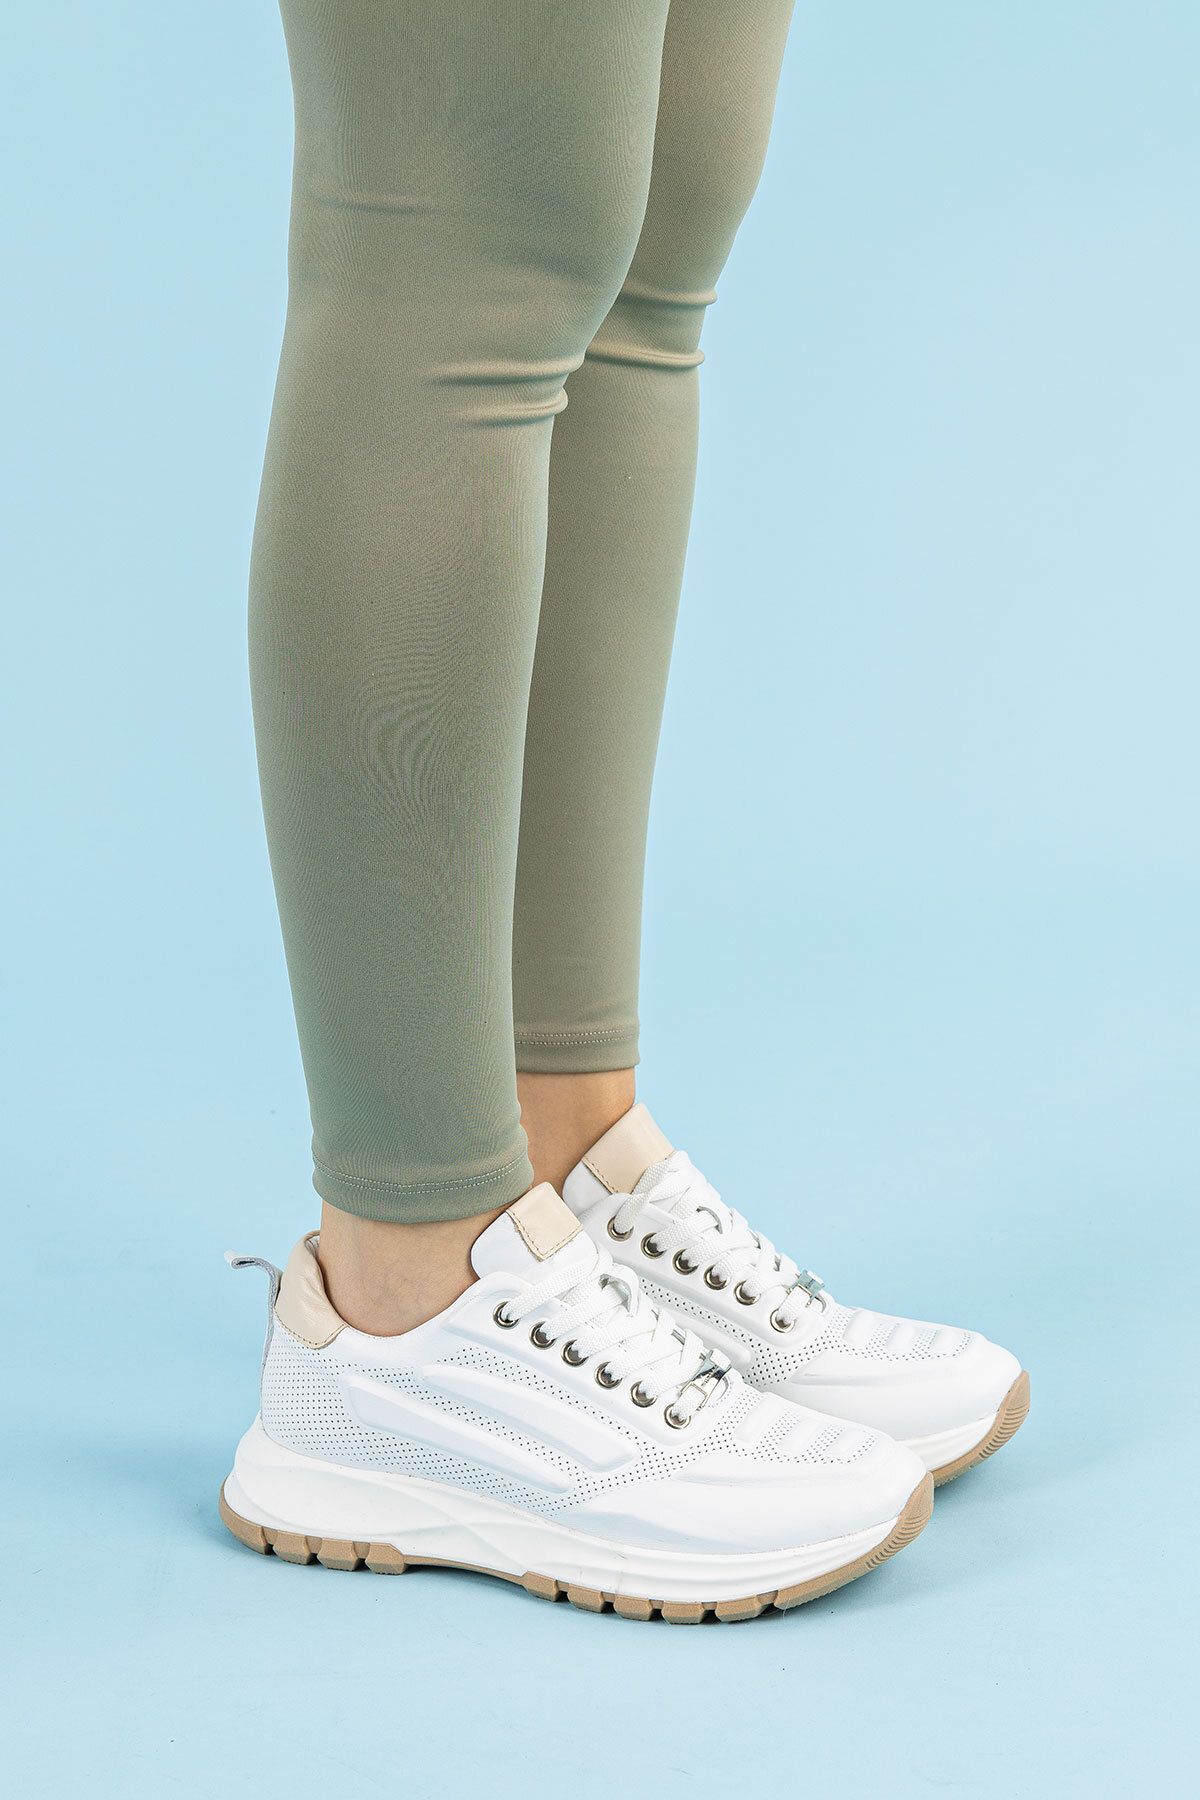 Getcho Fringe Kadın Hakiki Deri Beyaz Spor Ayakkabı